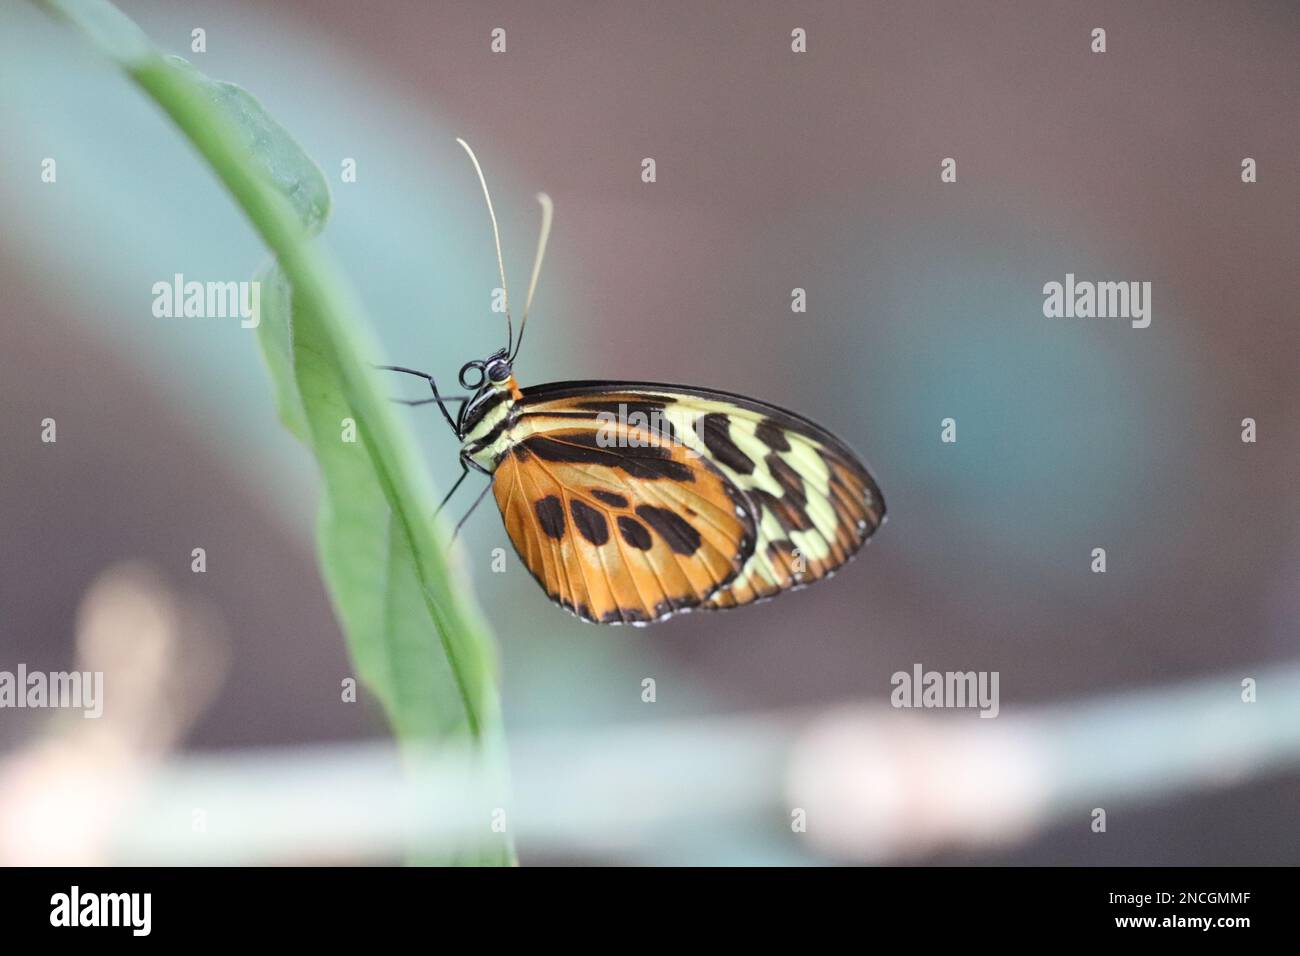 El primer plano de la mariposa que descansa sobre una hoja larga y delgada muestra detalles de proboscis, antenas, patas y marcas de alas. La imagen deja espacio para añadir texto. Foto de stock